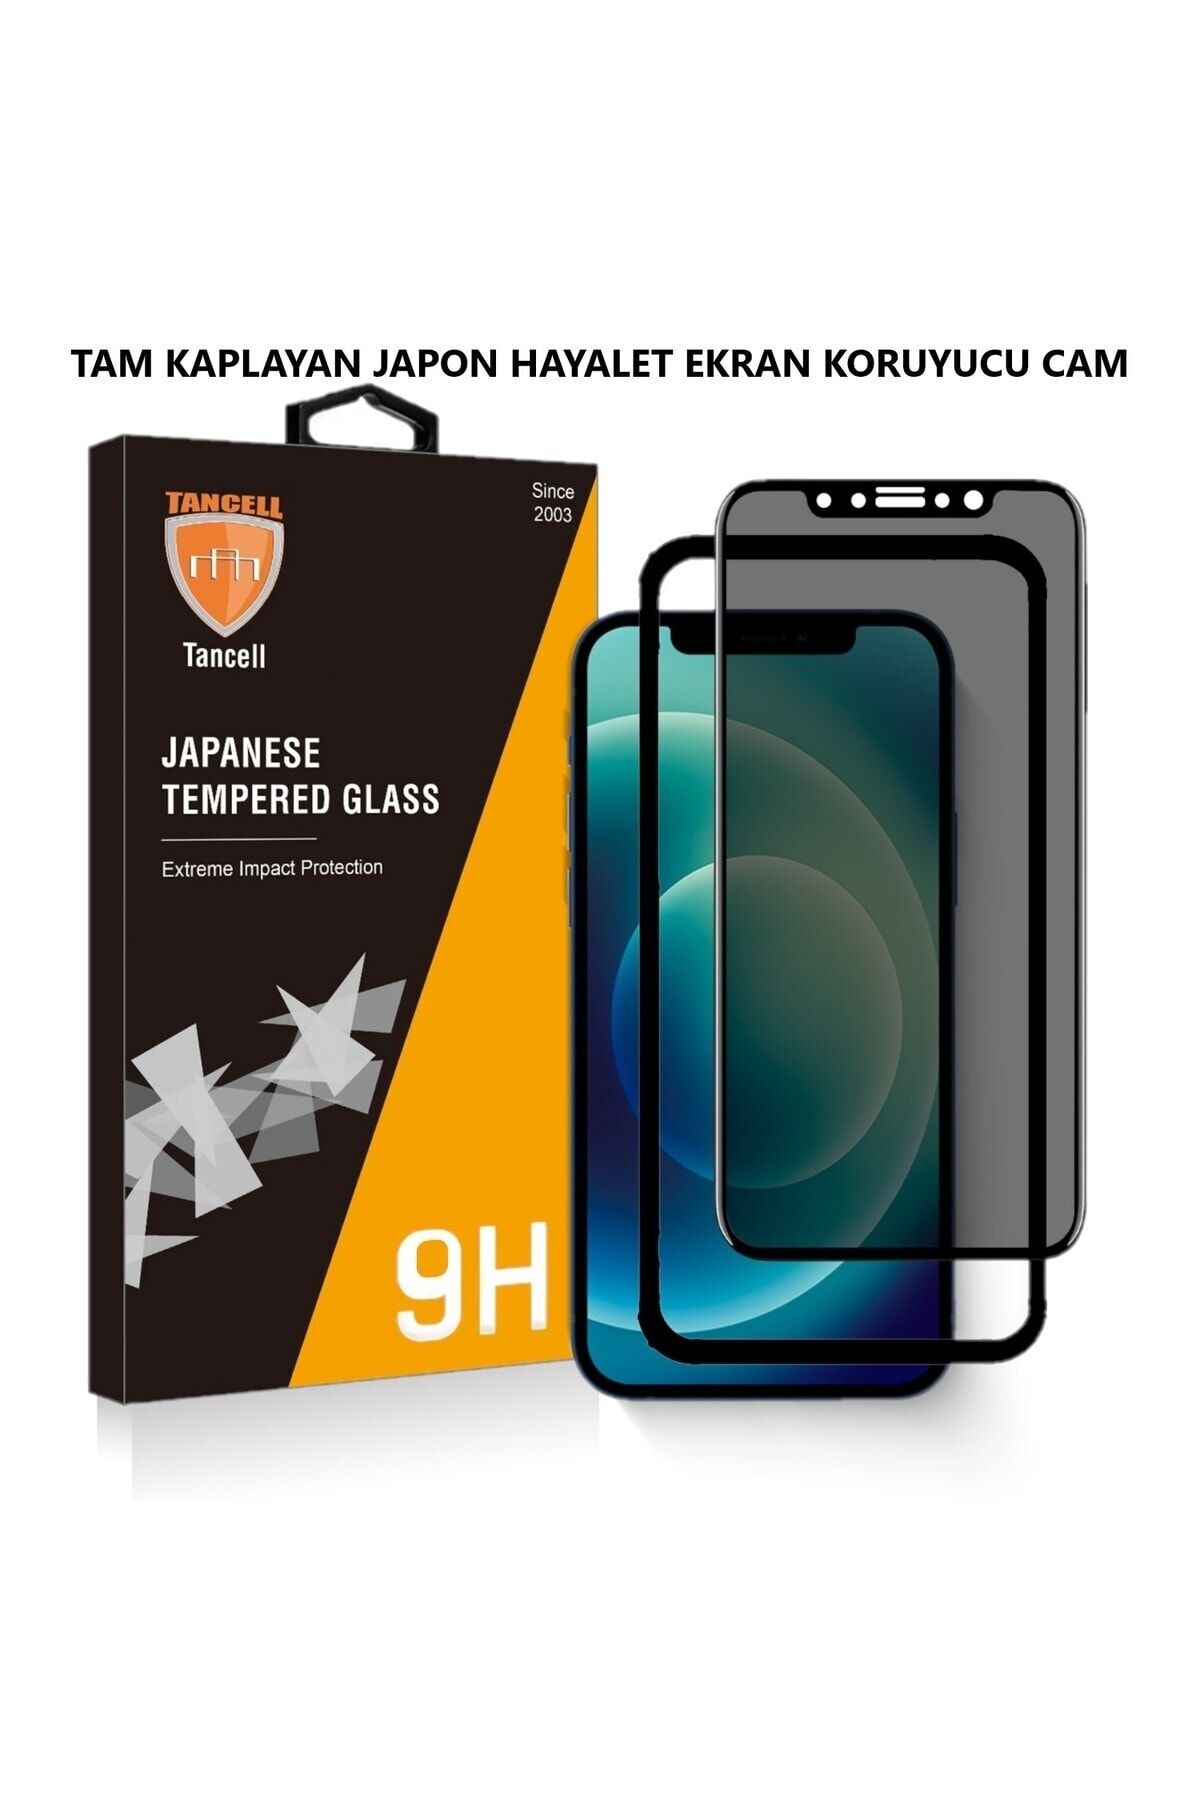 TANCELL İphone 14 Uyumlu Hayalet Ekran Koruyucu Tam Kaplayan Japon Kırılmaz Cam 6.1 Inc (2 ADET)